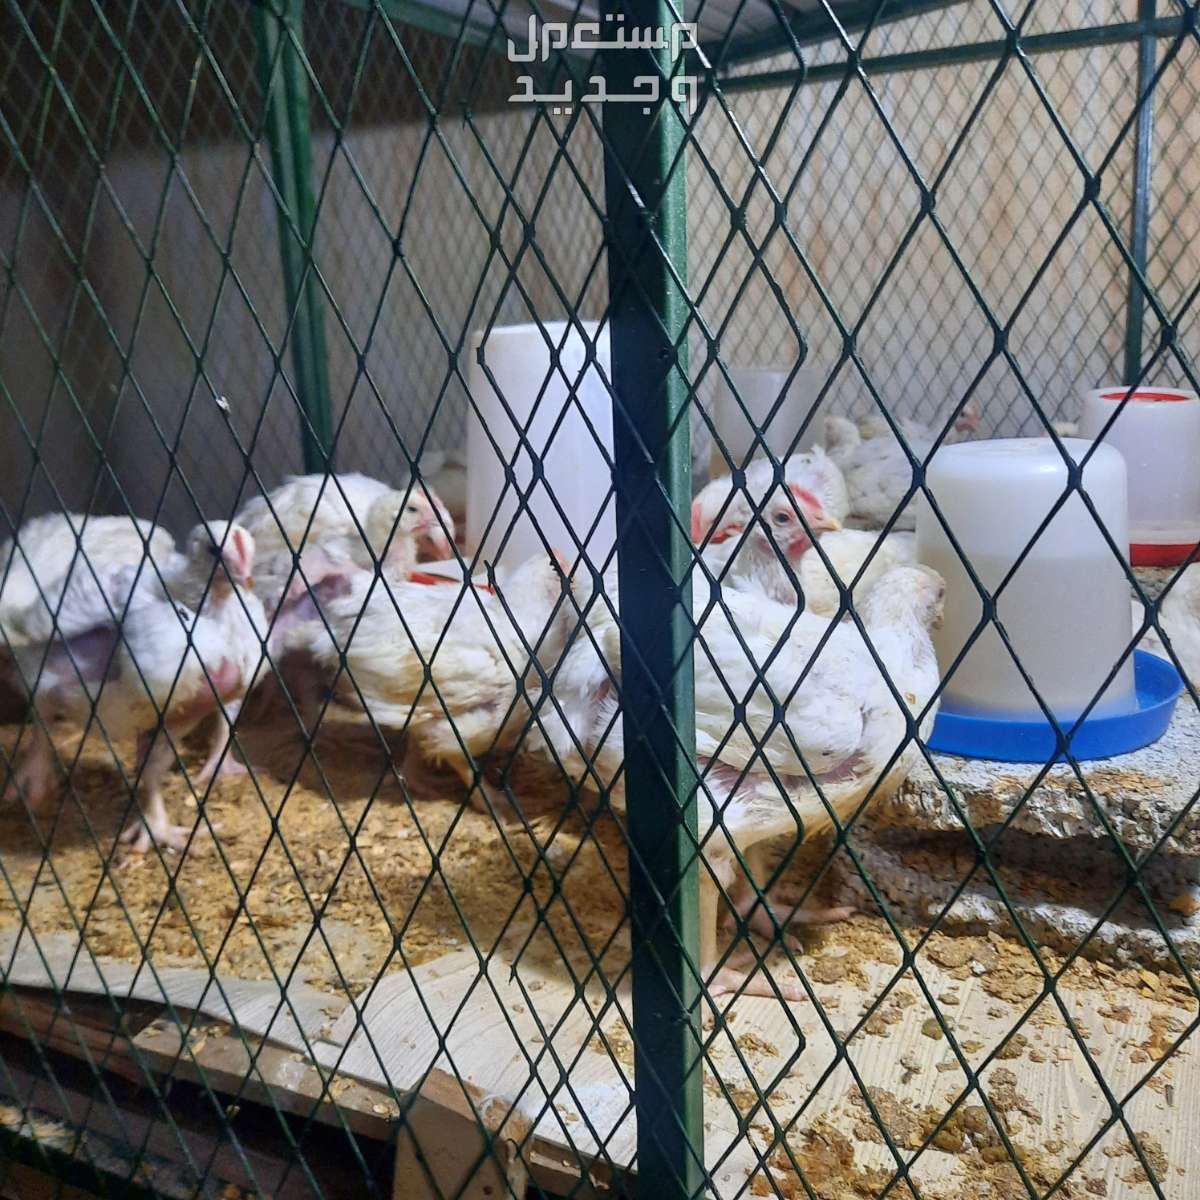 دجاج لاحم في بريدة بسعر 16 ريال سعودي